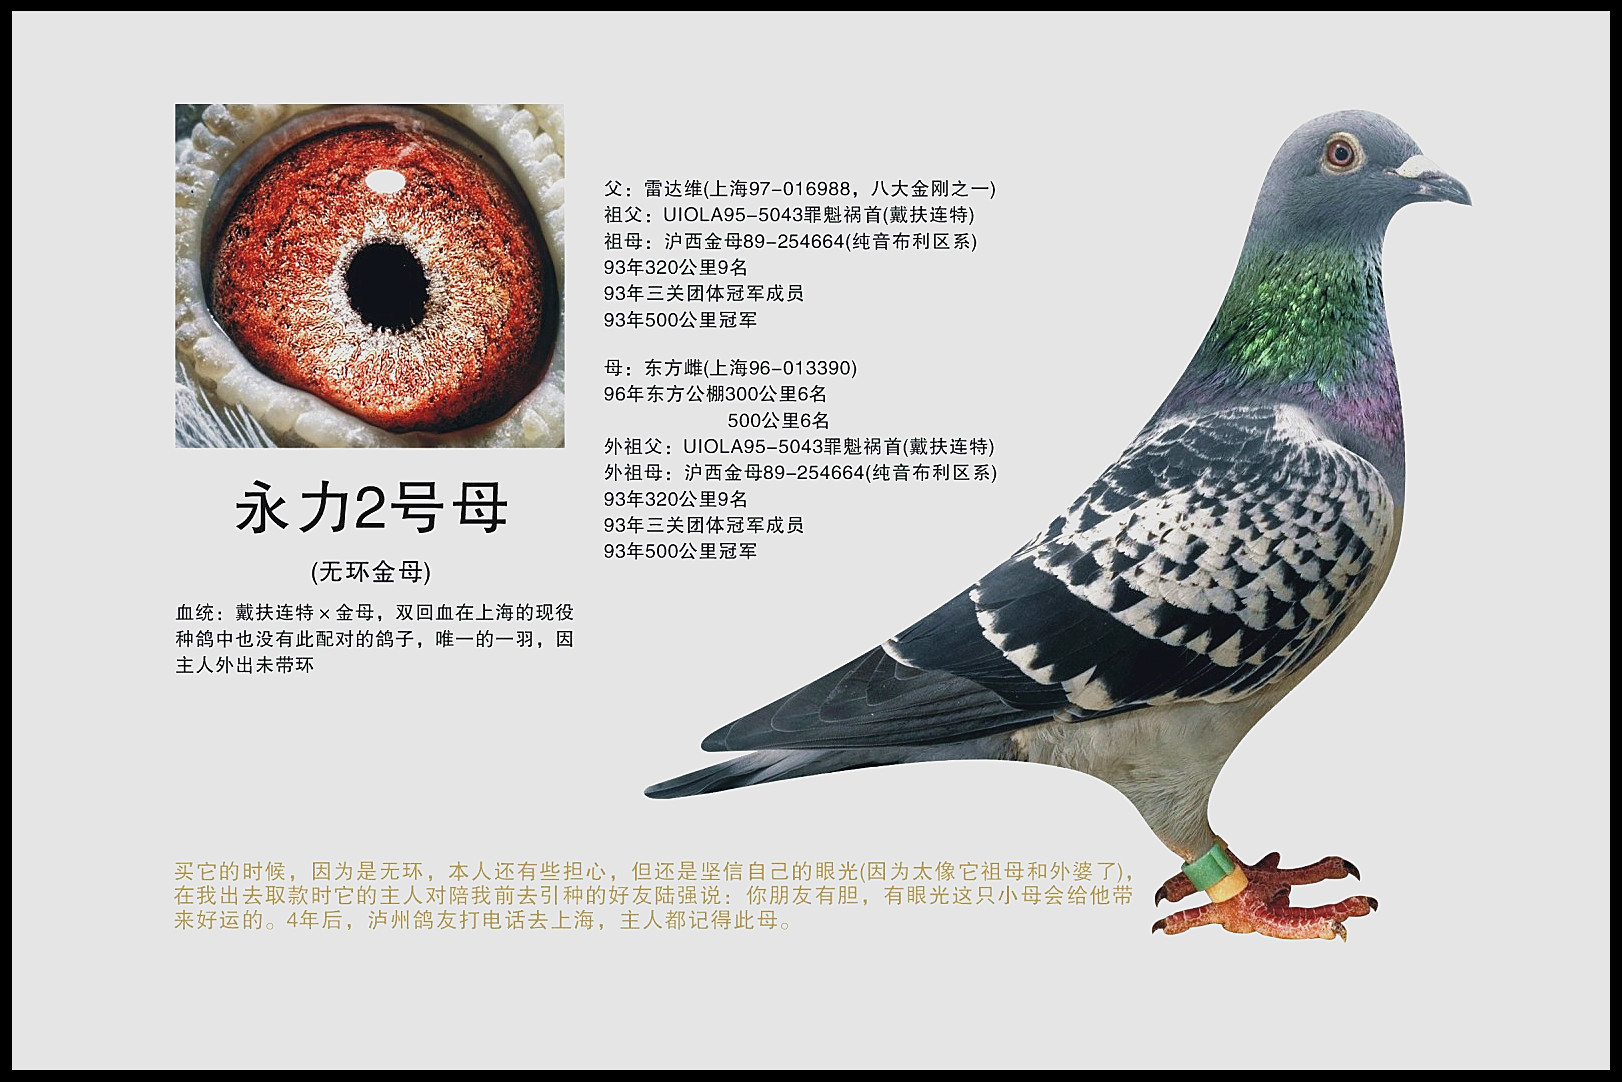 名贵鸽子的品种及名称图片